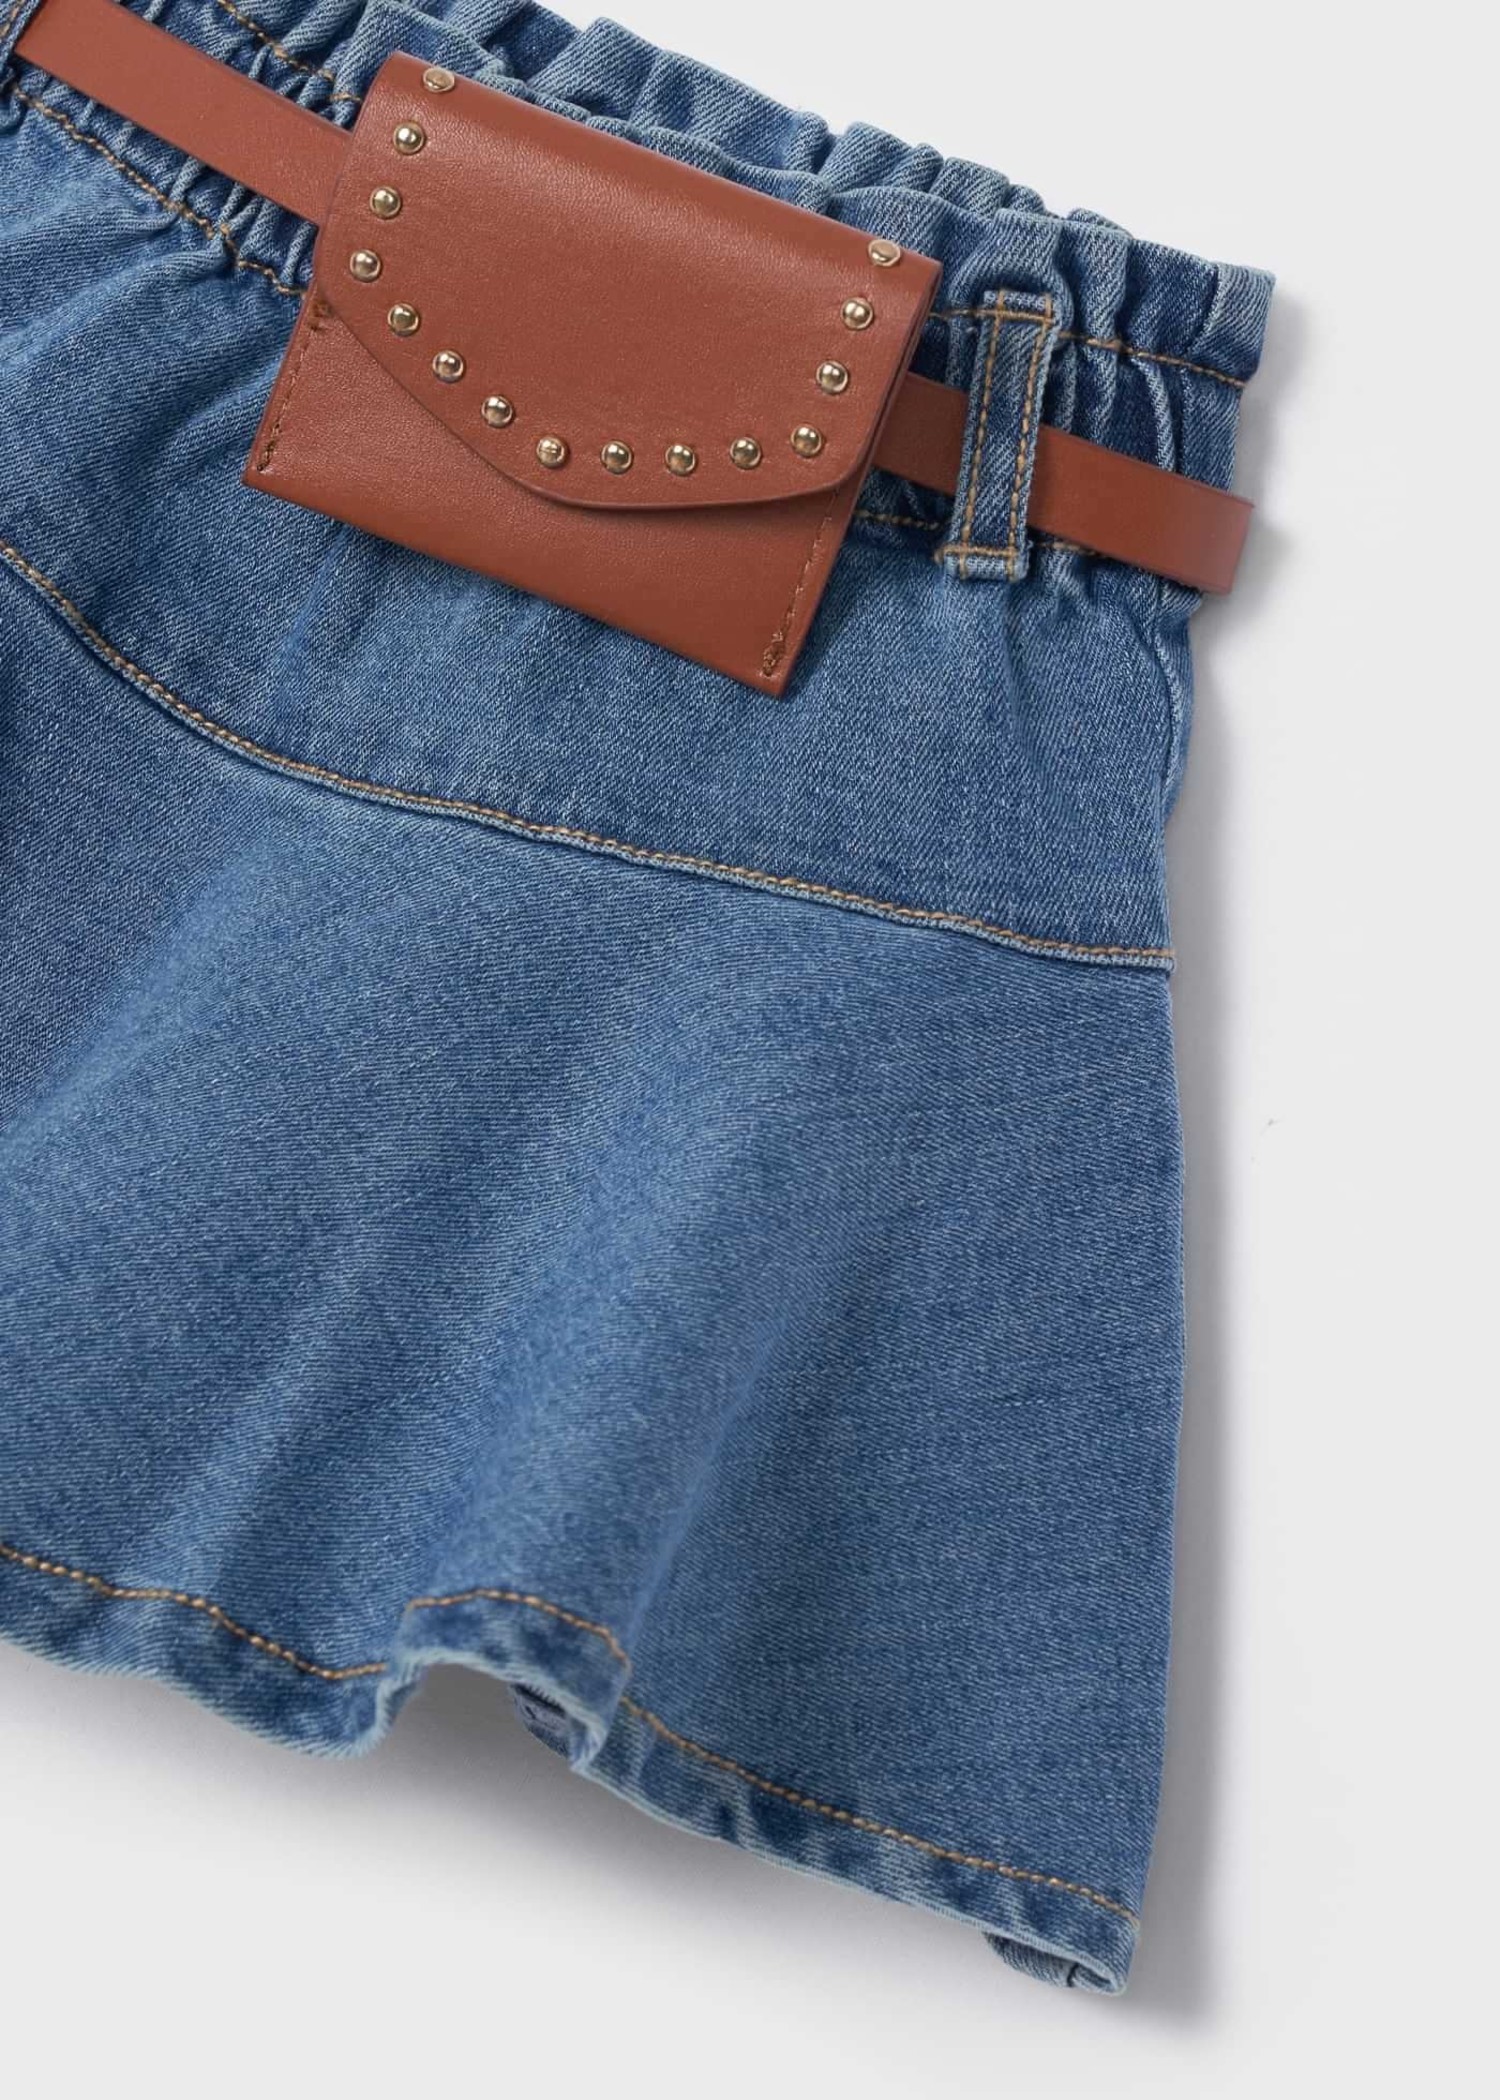 Toddler Girls Button Irregular Raw Hem Casual Ripped Denim Skirt Kids  Summer Clothes | obittersweet.com